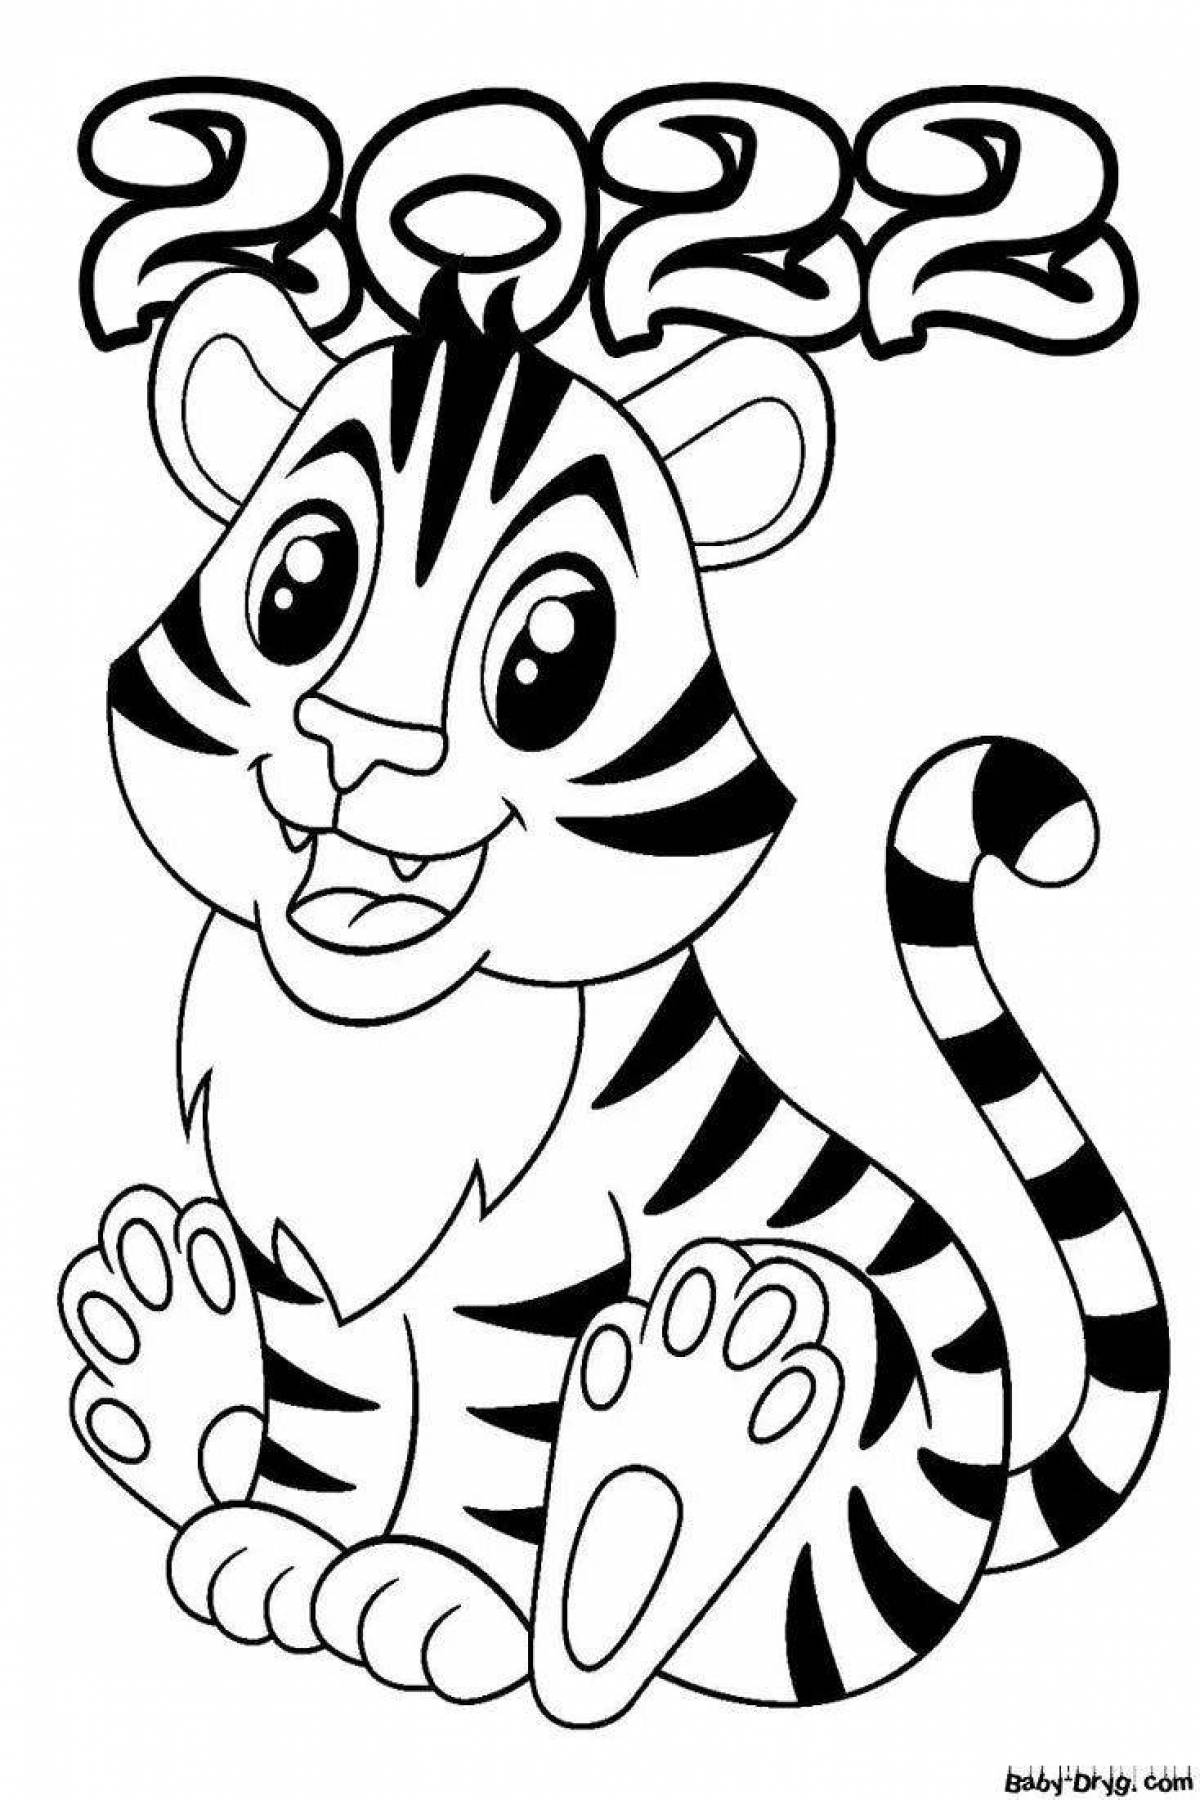 Яркая раскраска тигра для детей